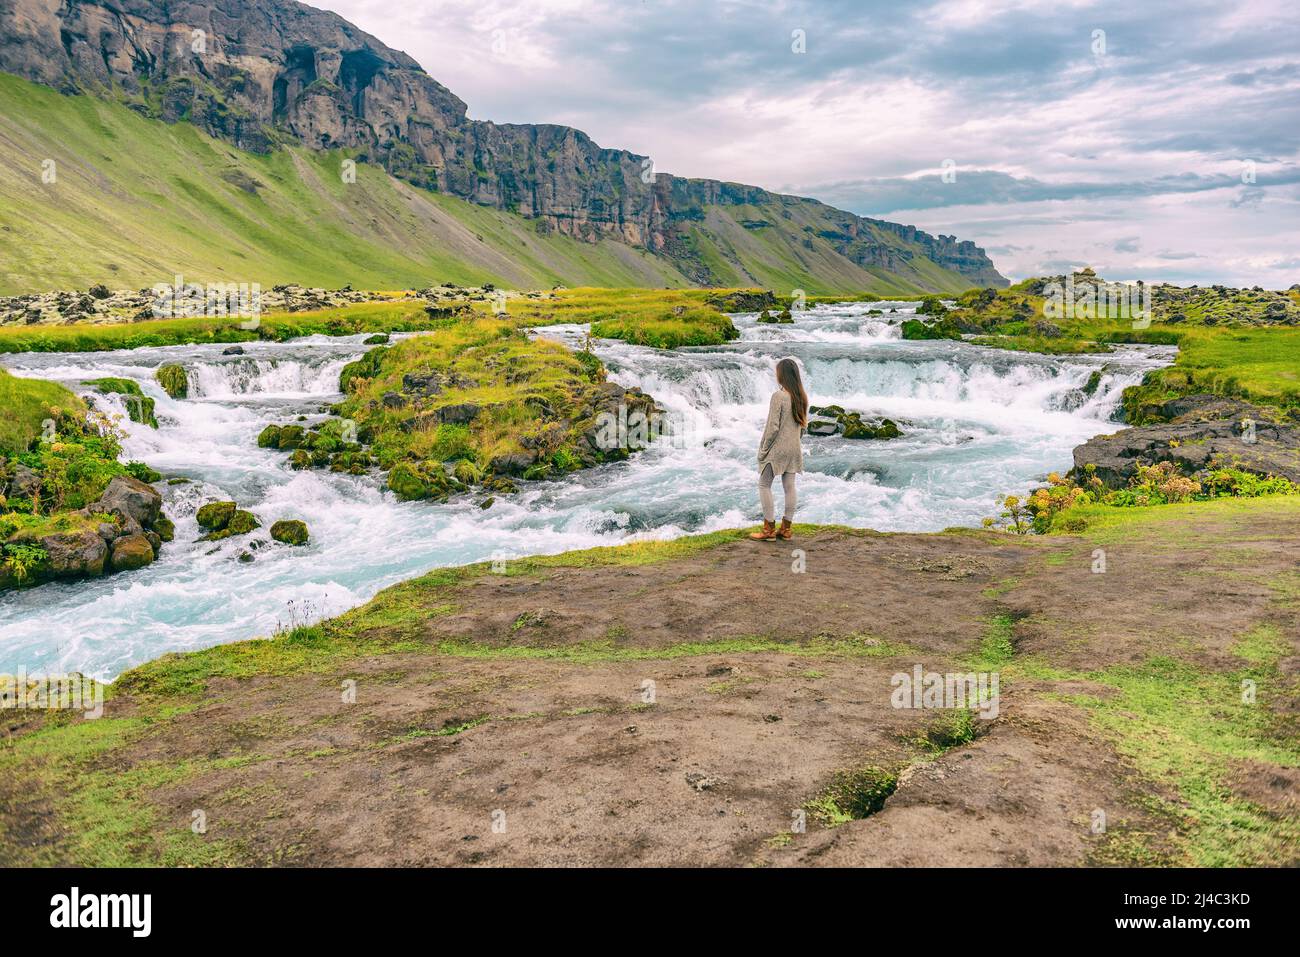 Vestiti islandesi immagini e fotografie stock ad alta risoluzione - Alamy